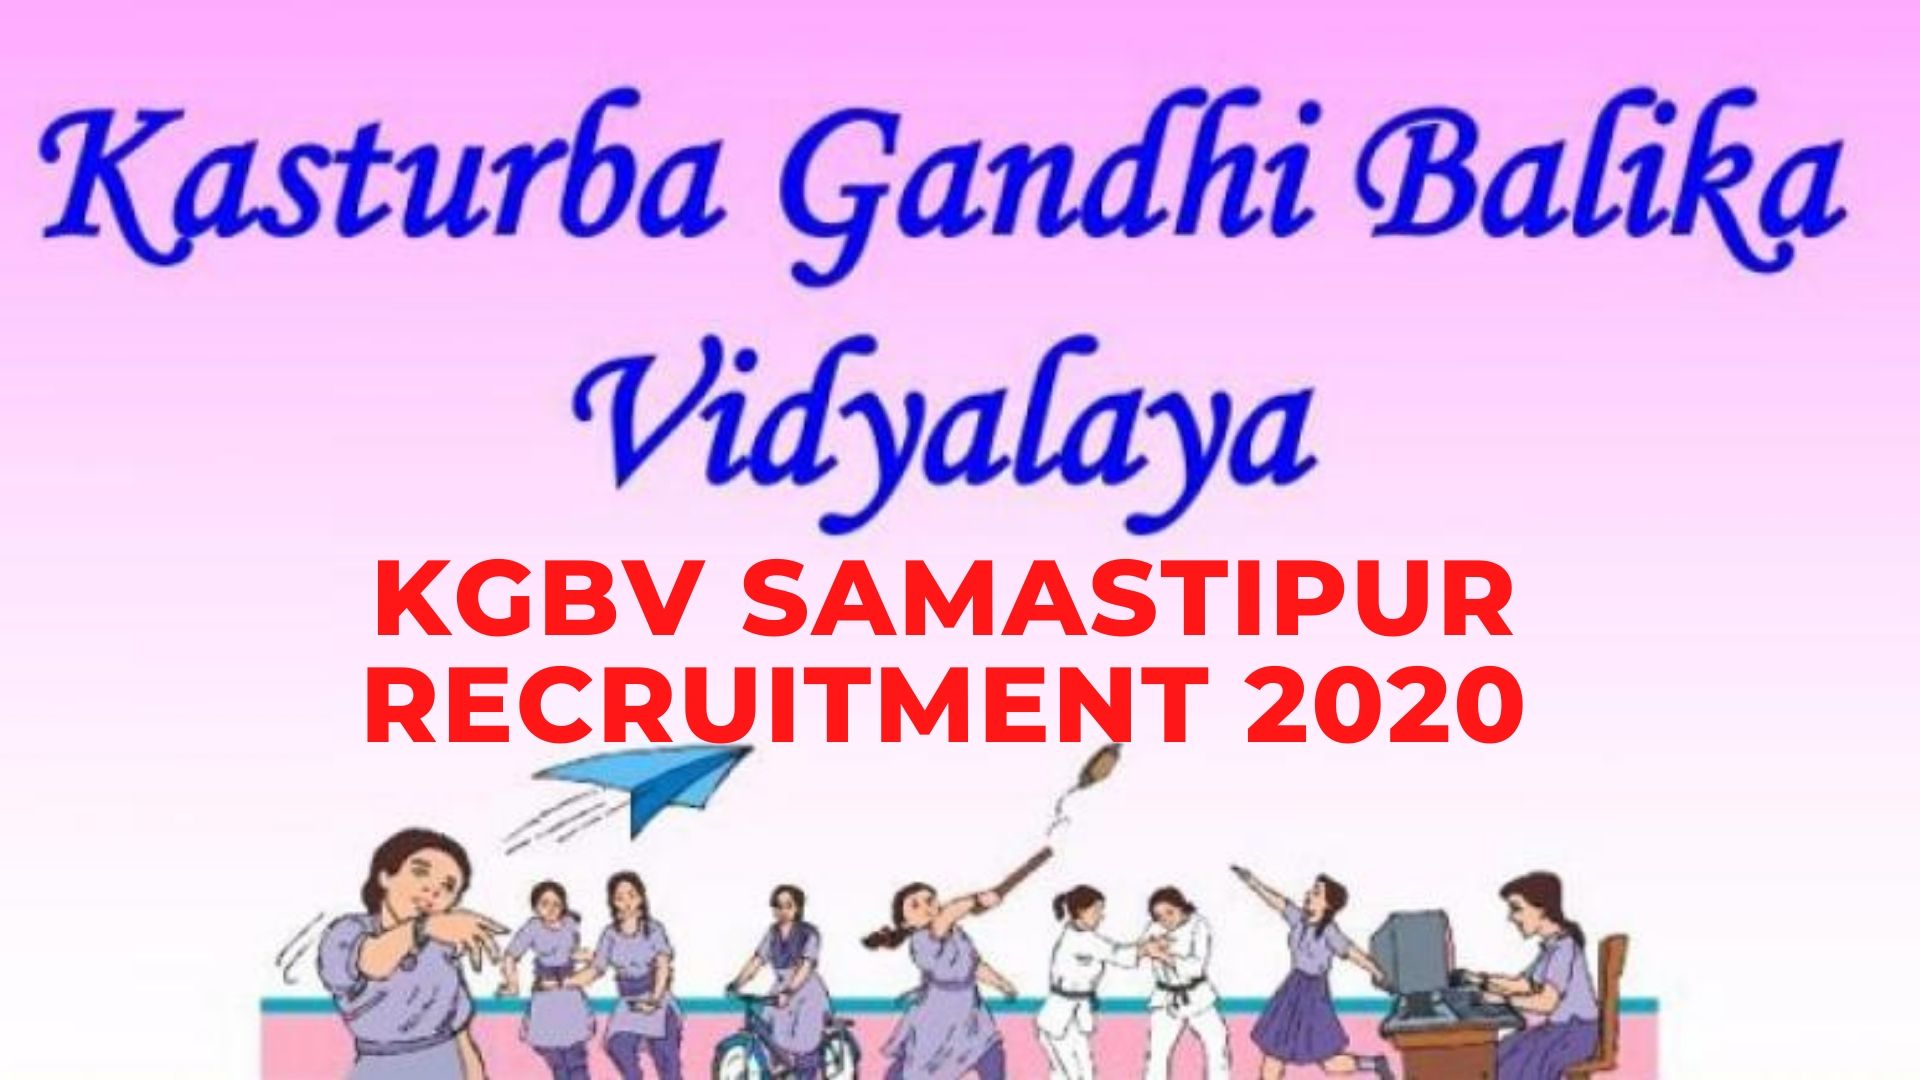 KGBV Samastipur Recruitment 2020